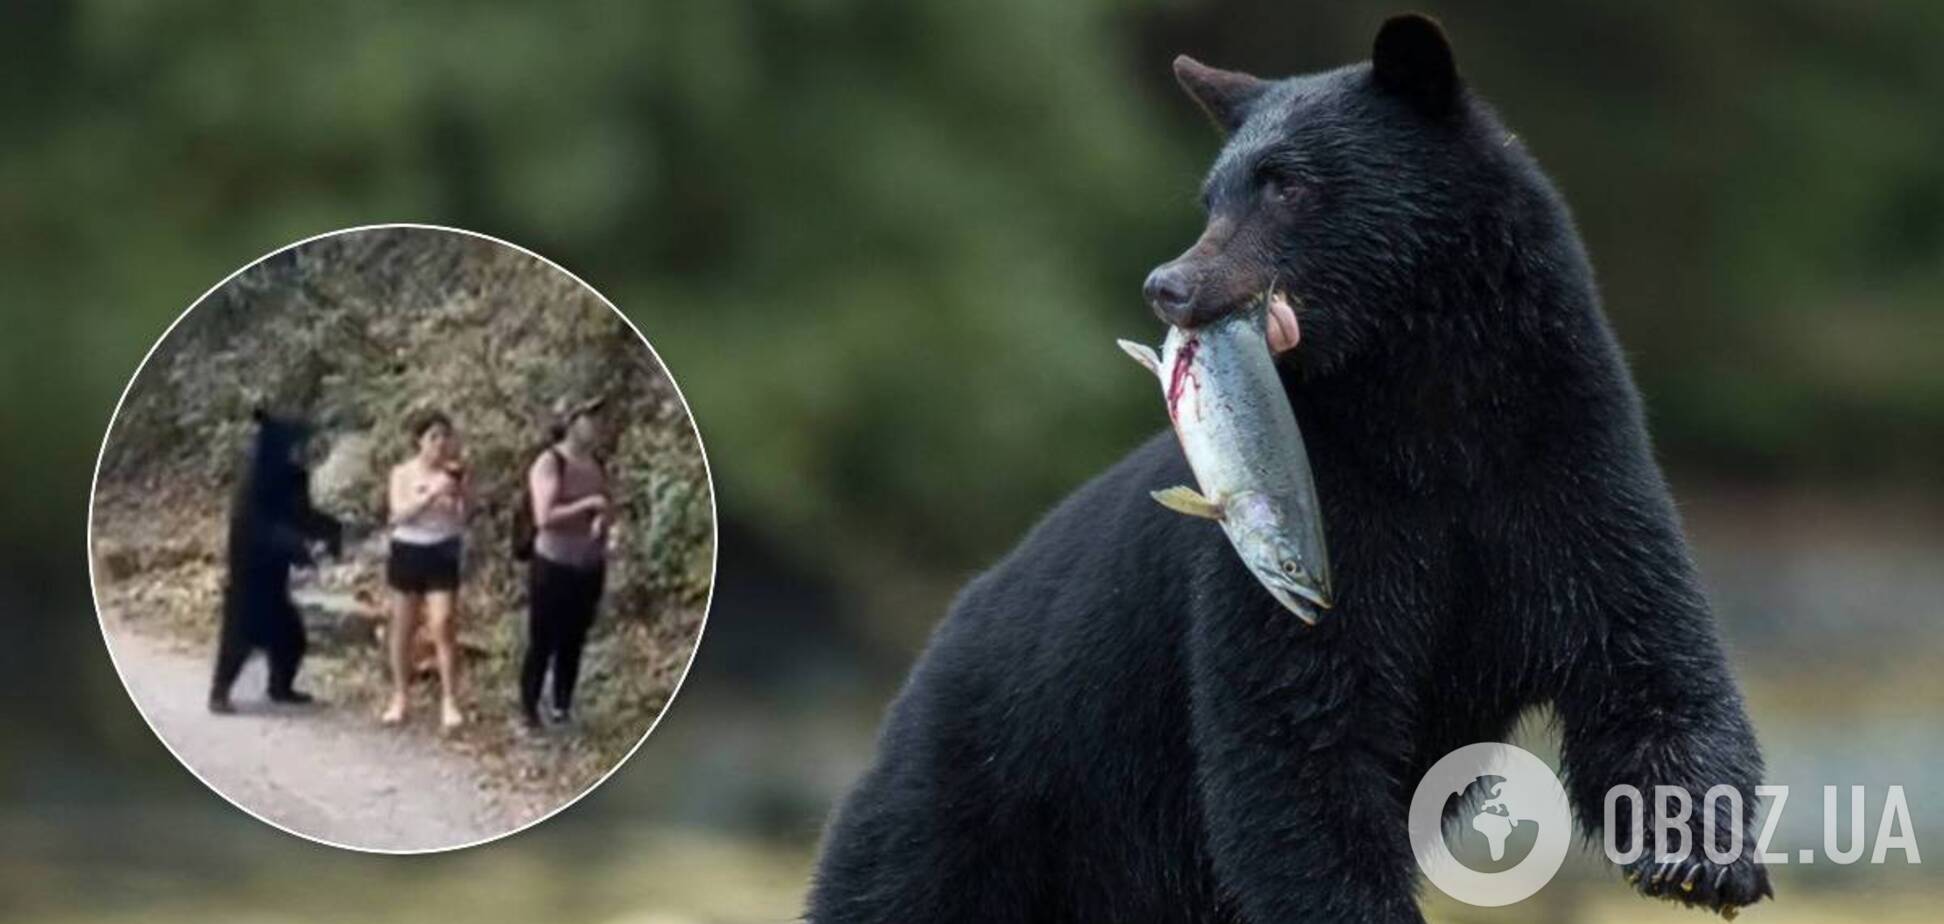 Медведь напугал туристок, когда те делали Селфи: момент сняли на видео